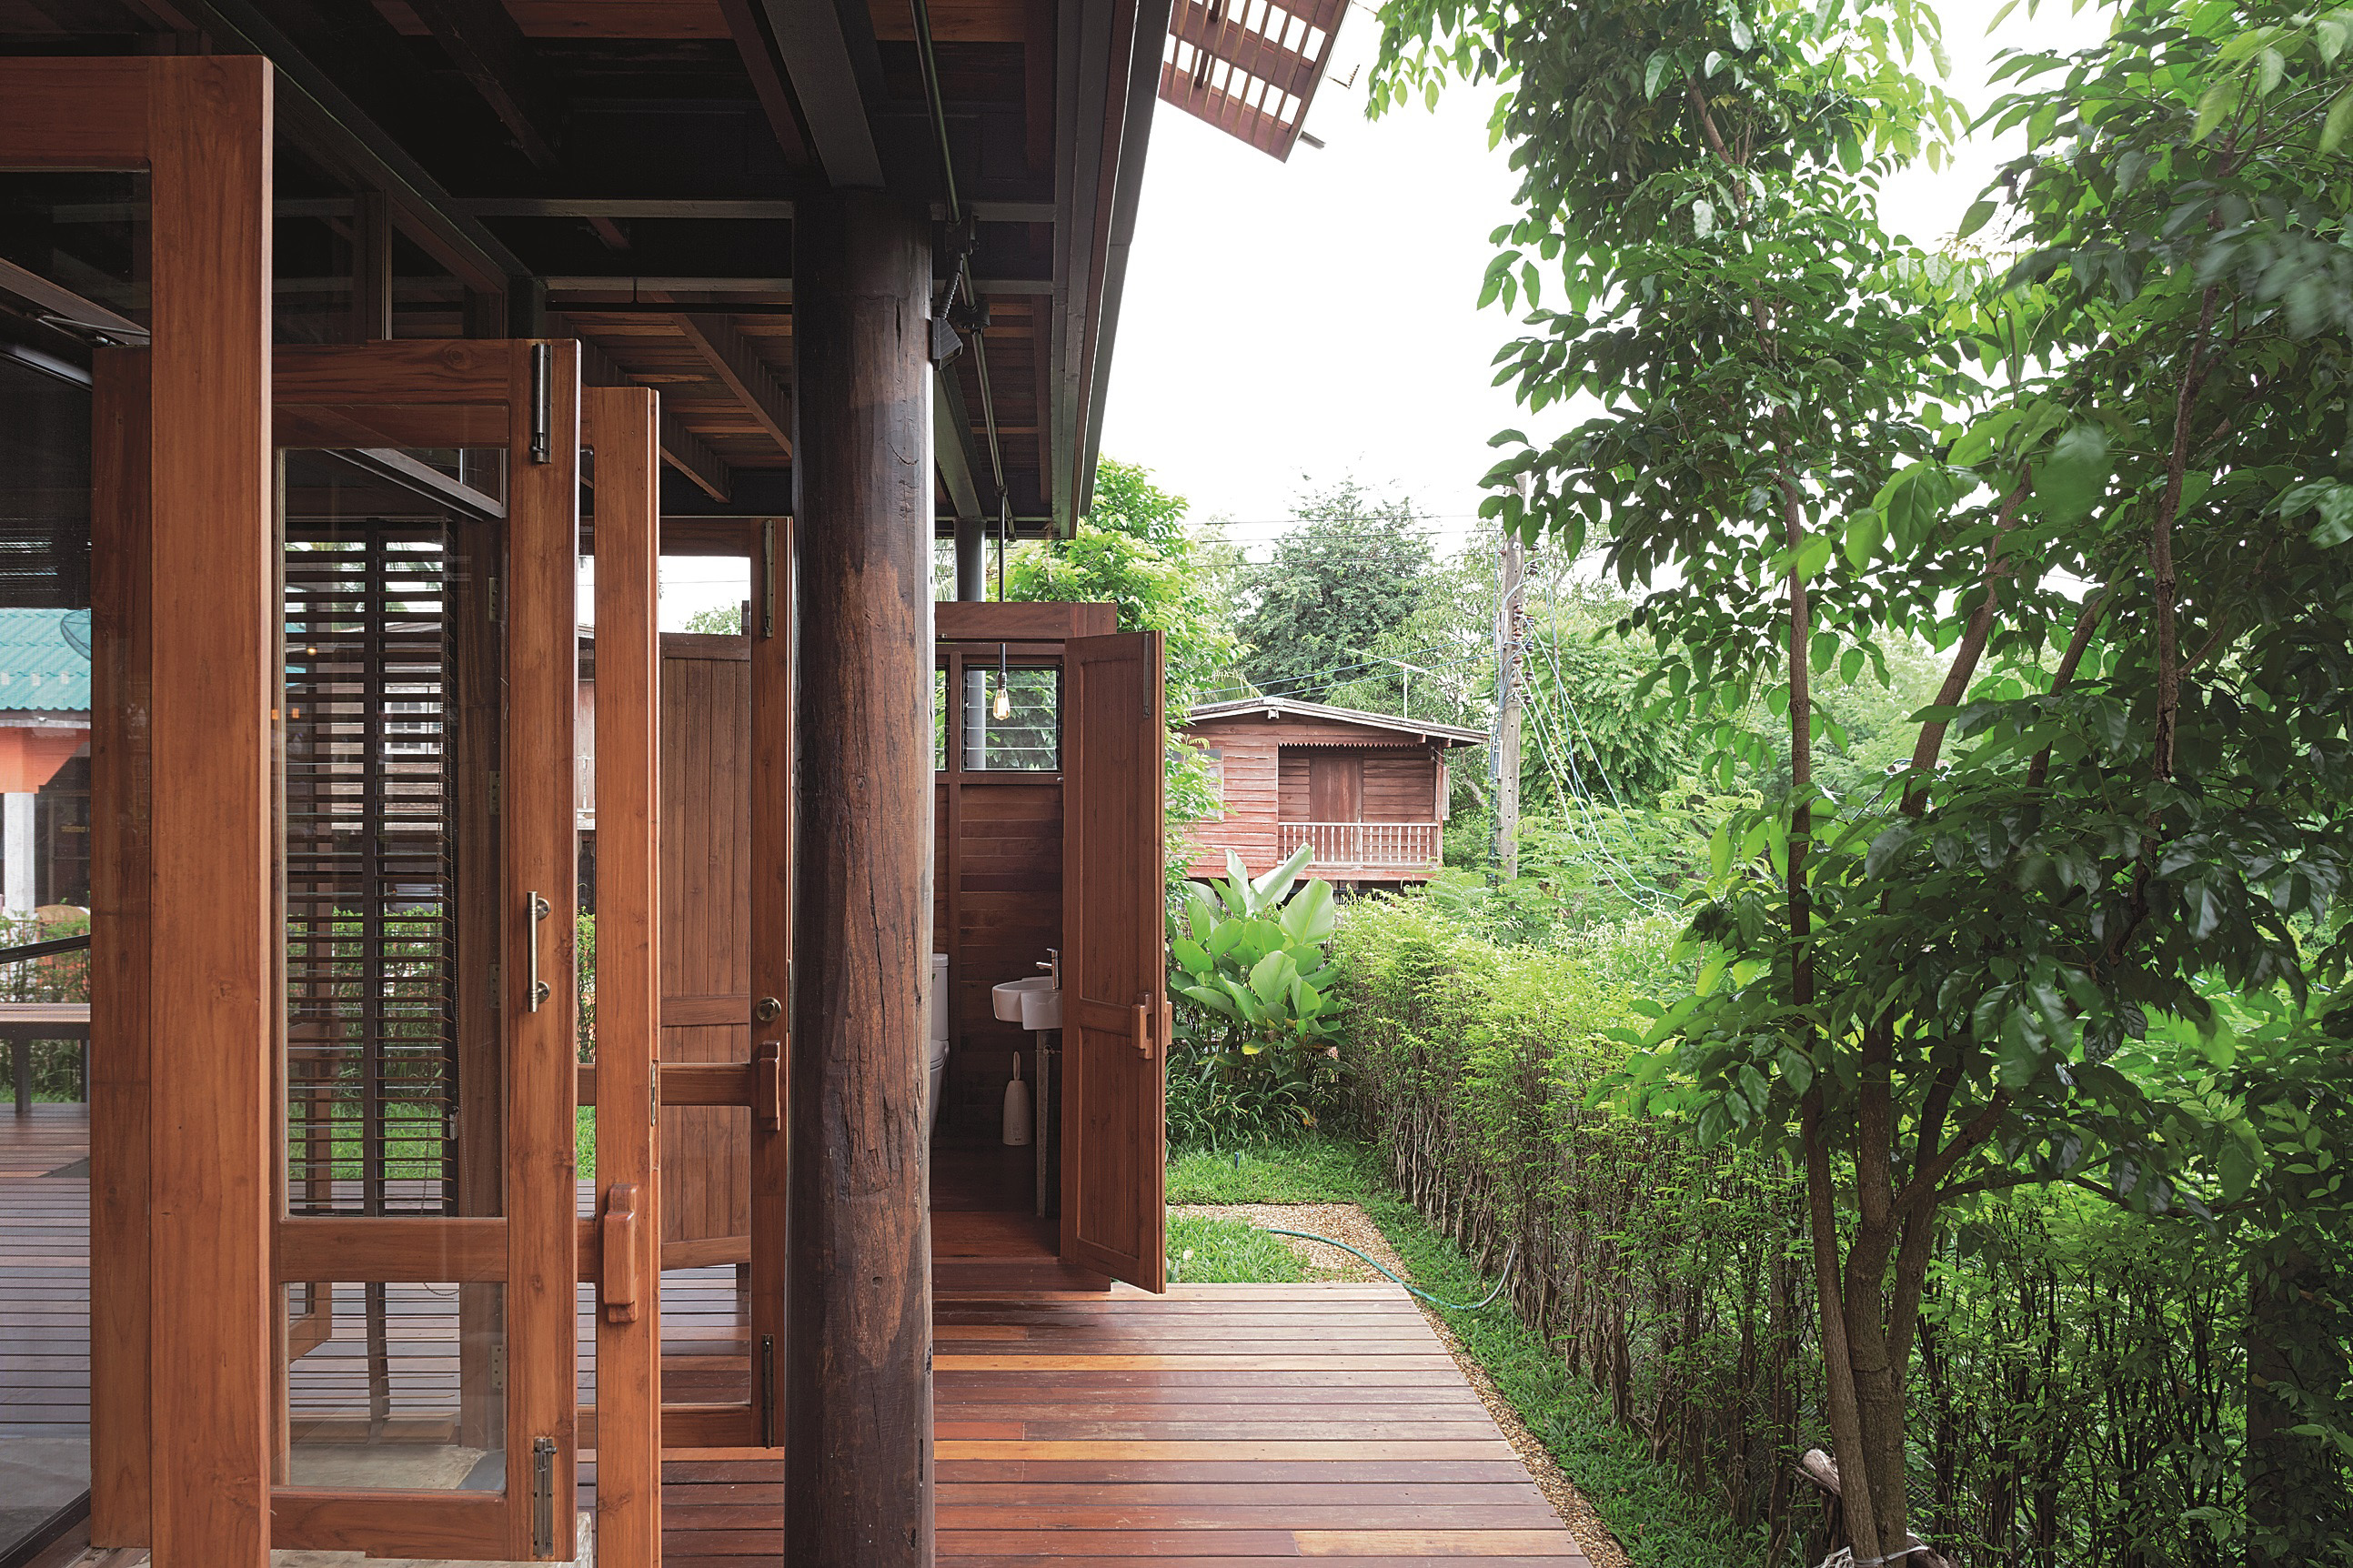 บ้านไม้.นโครงสร้างเหล็ก เฉลียงข้างบ้าน ประตูบานเปิด thaihouse